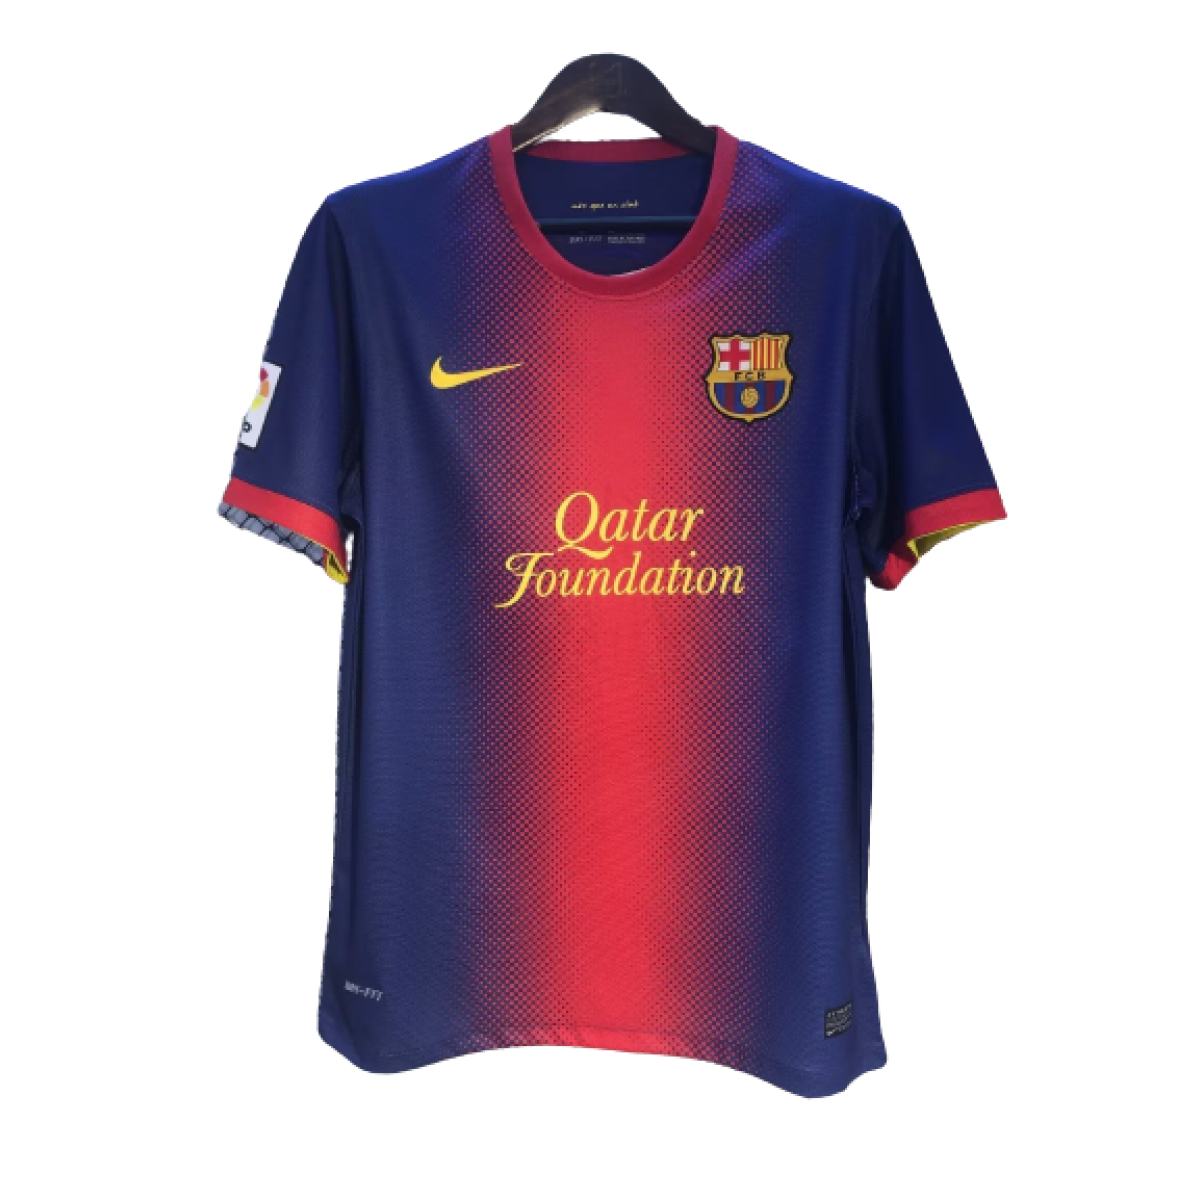 Camisetas del Barça, Categorías